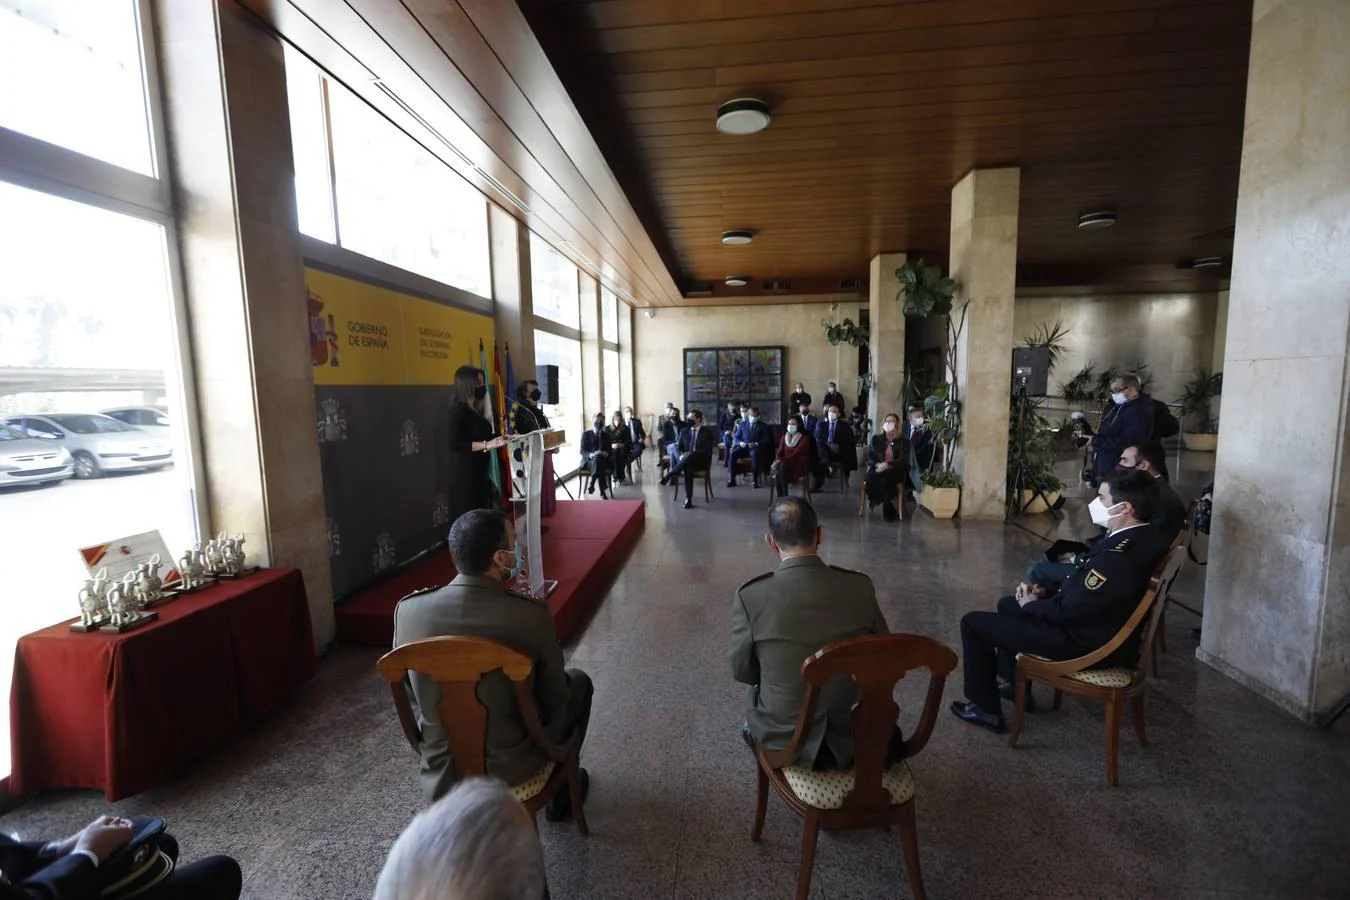 Los premios Plaza de la Constitución de Córdoba, en imágenes